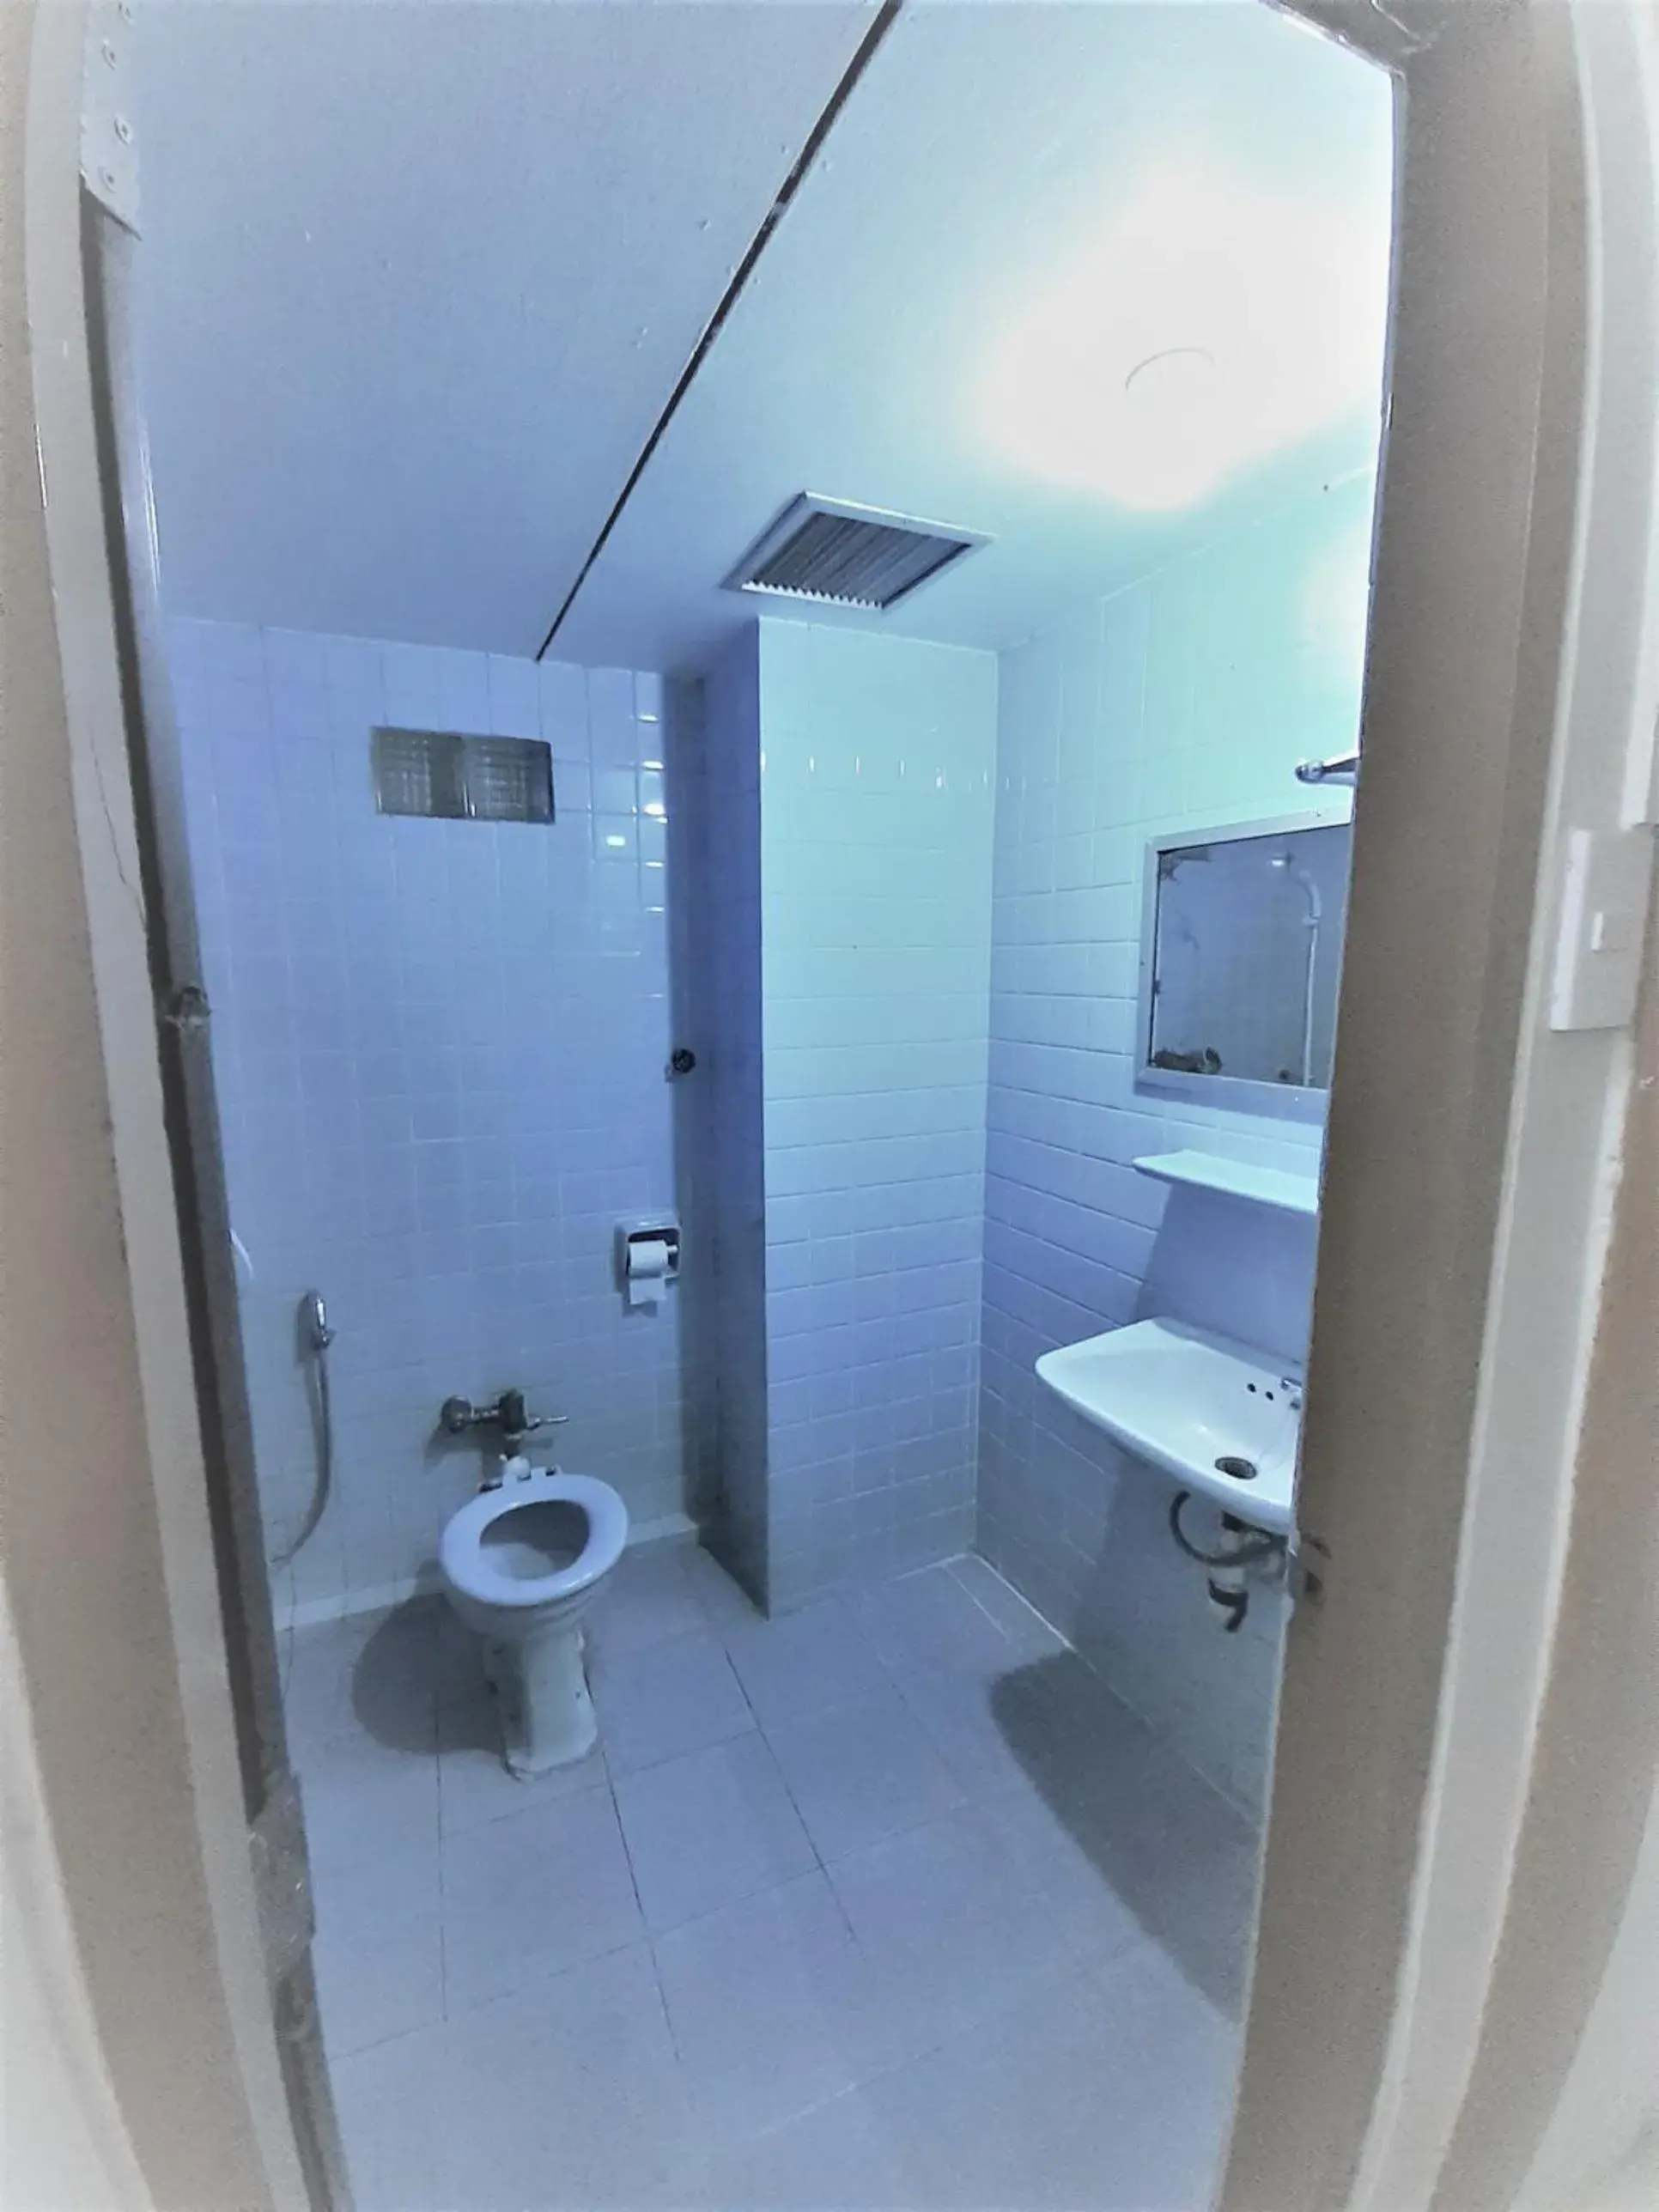 Bathroom in Singapore Hotel